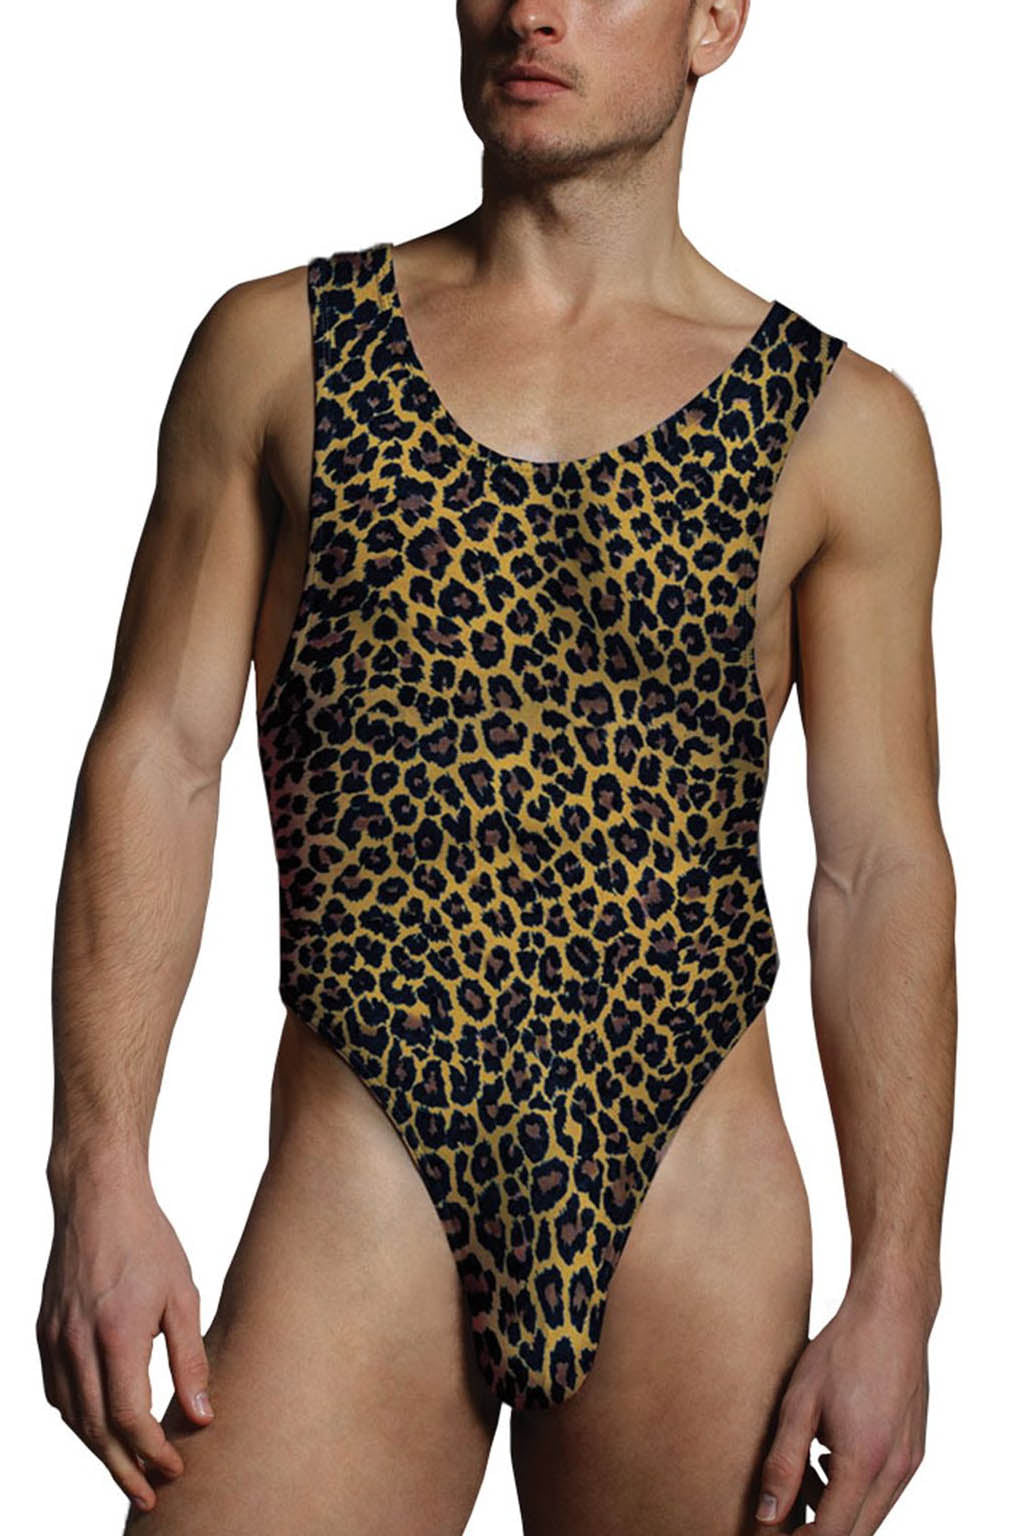 Manview Leopard Print Brazilian Cut Lowrise Underwear – Bodywear